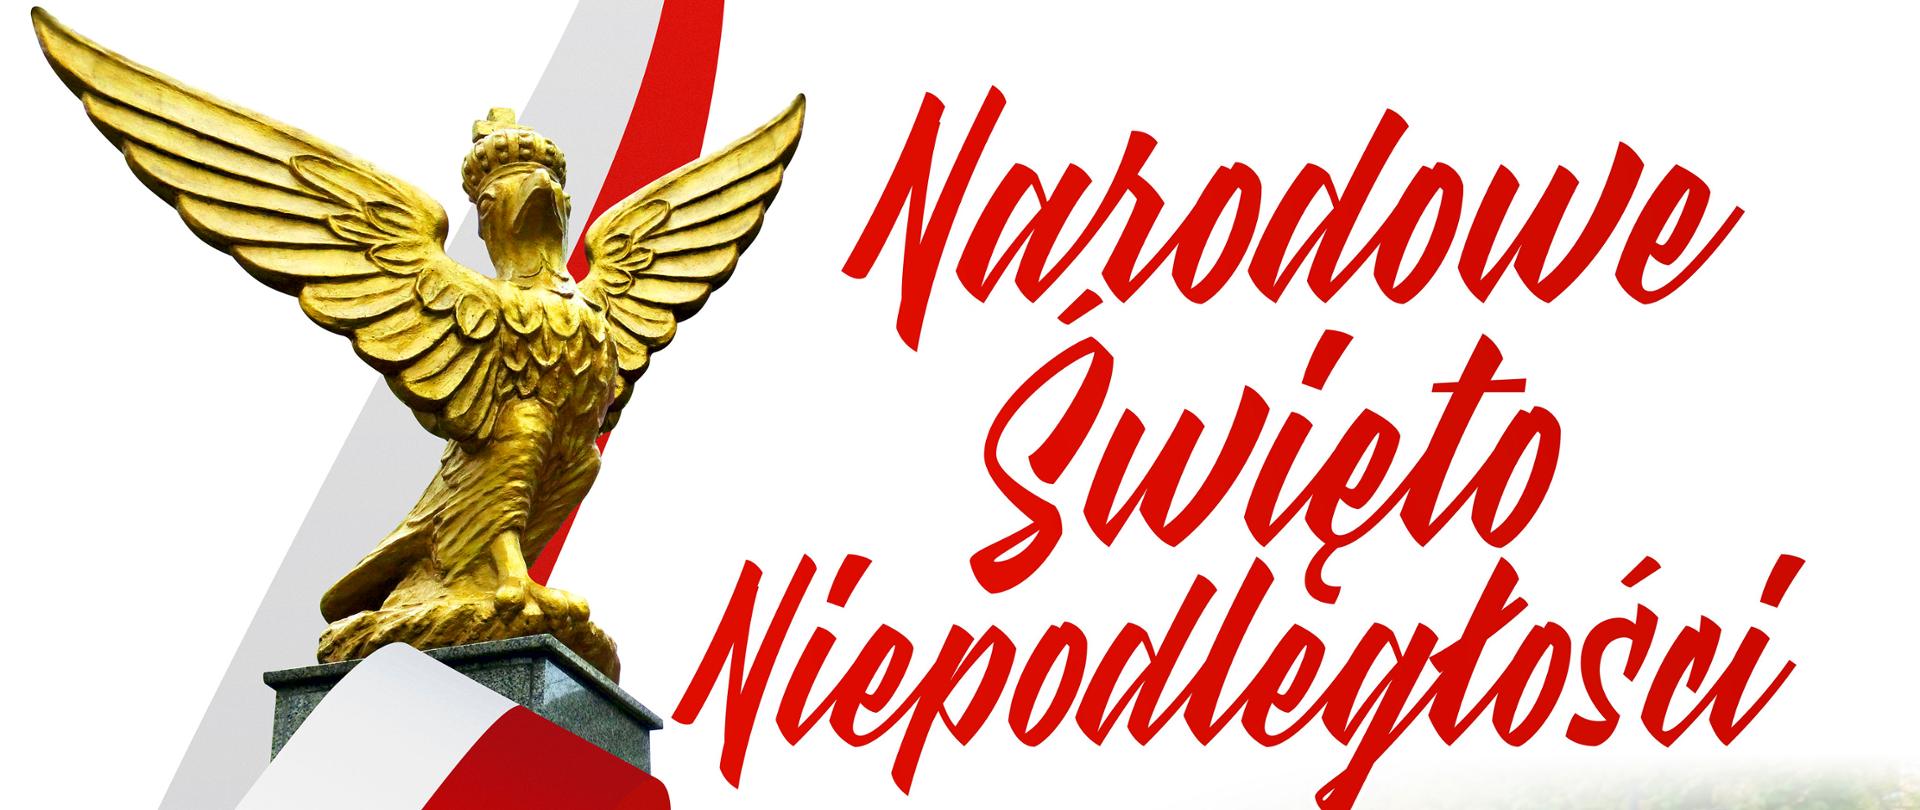 program Narodowego Święta Niepodległości w 2021 r. w Świebodzinie